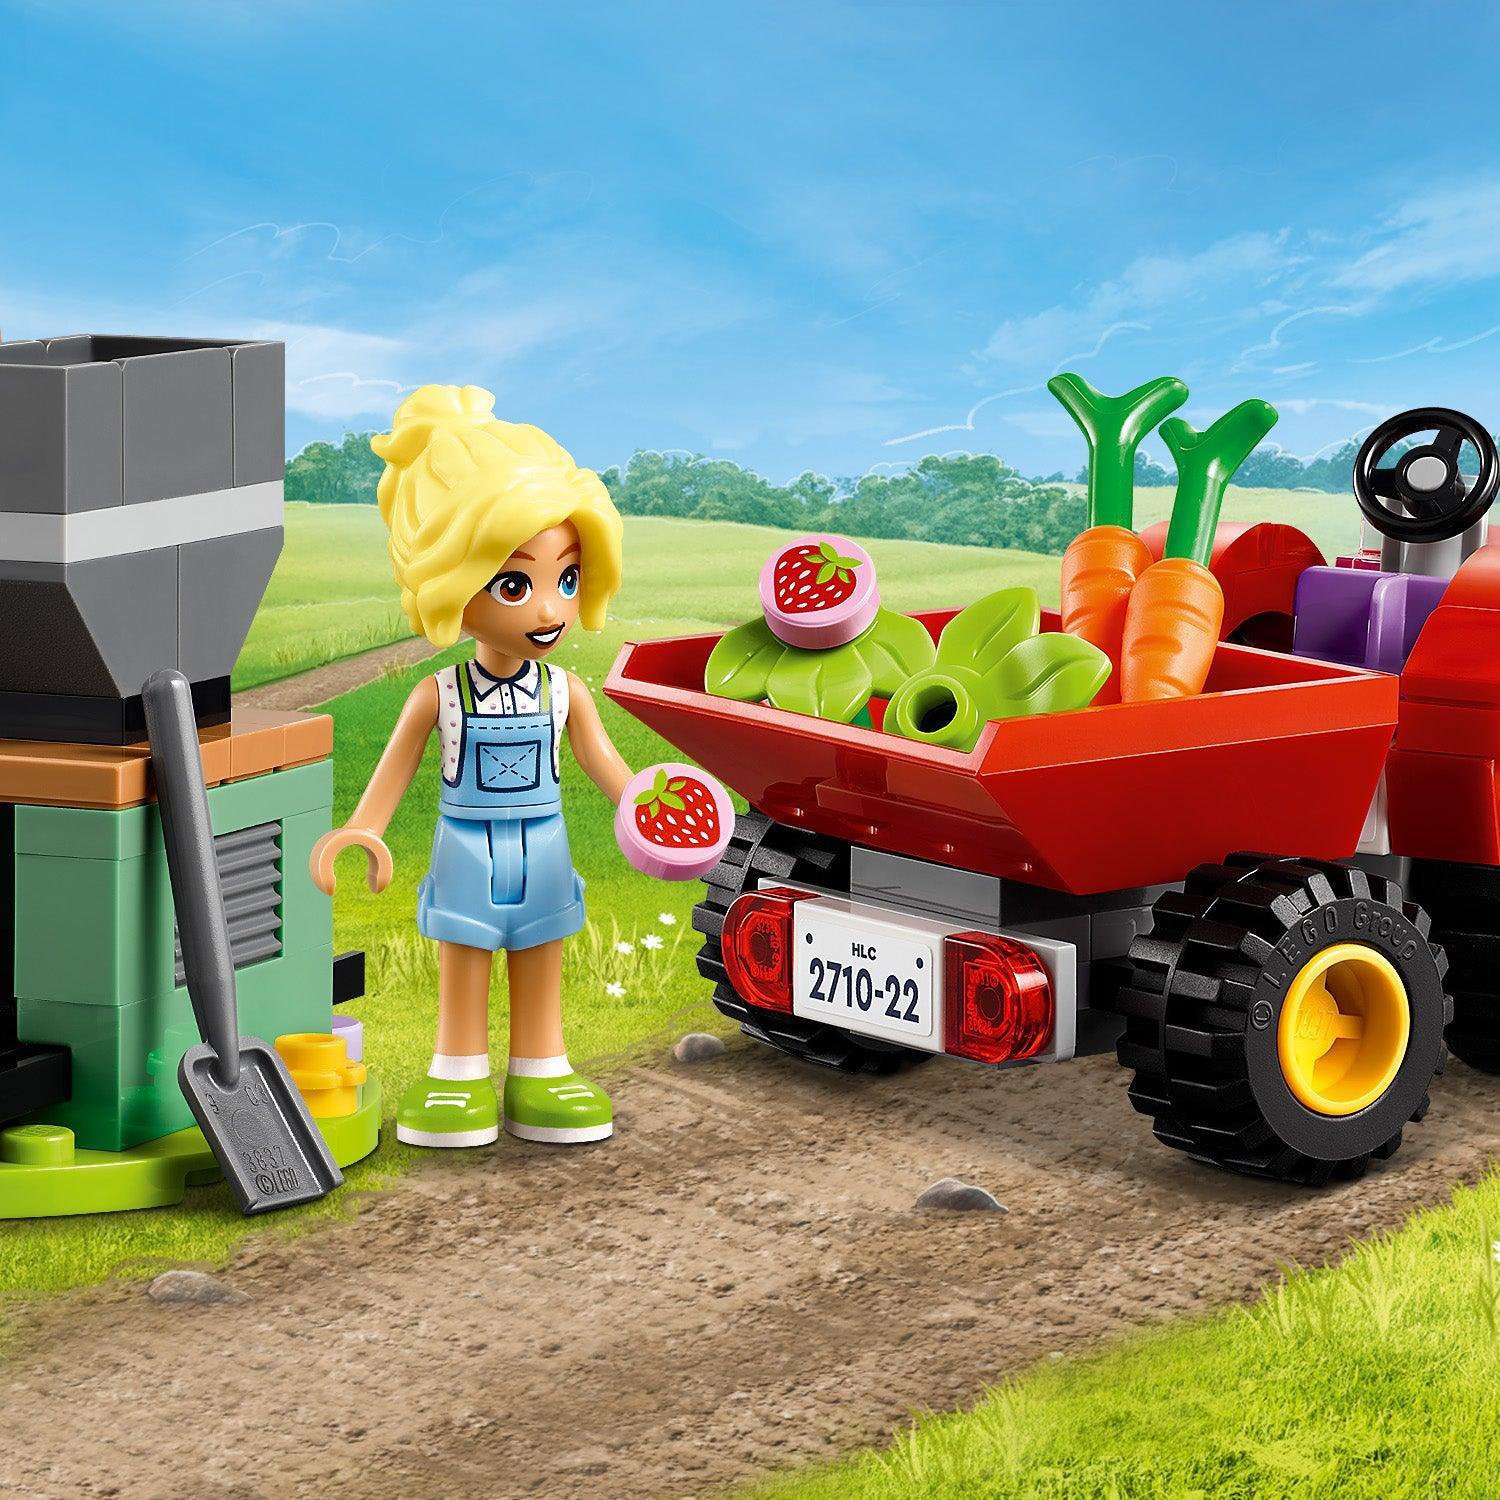 LEGO Boerderij Dieren verzorging 42617 Friends | 2TTOYS ✓ Official shop<br>